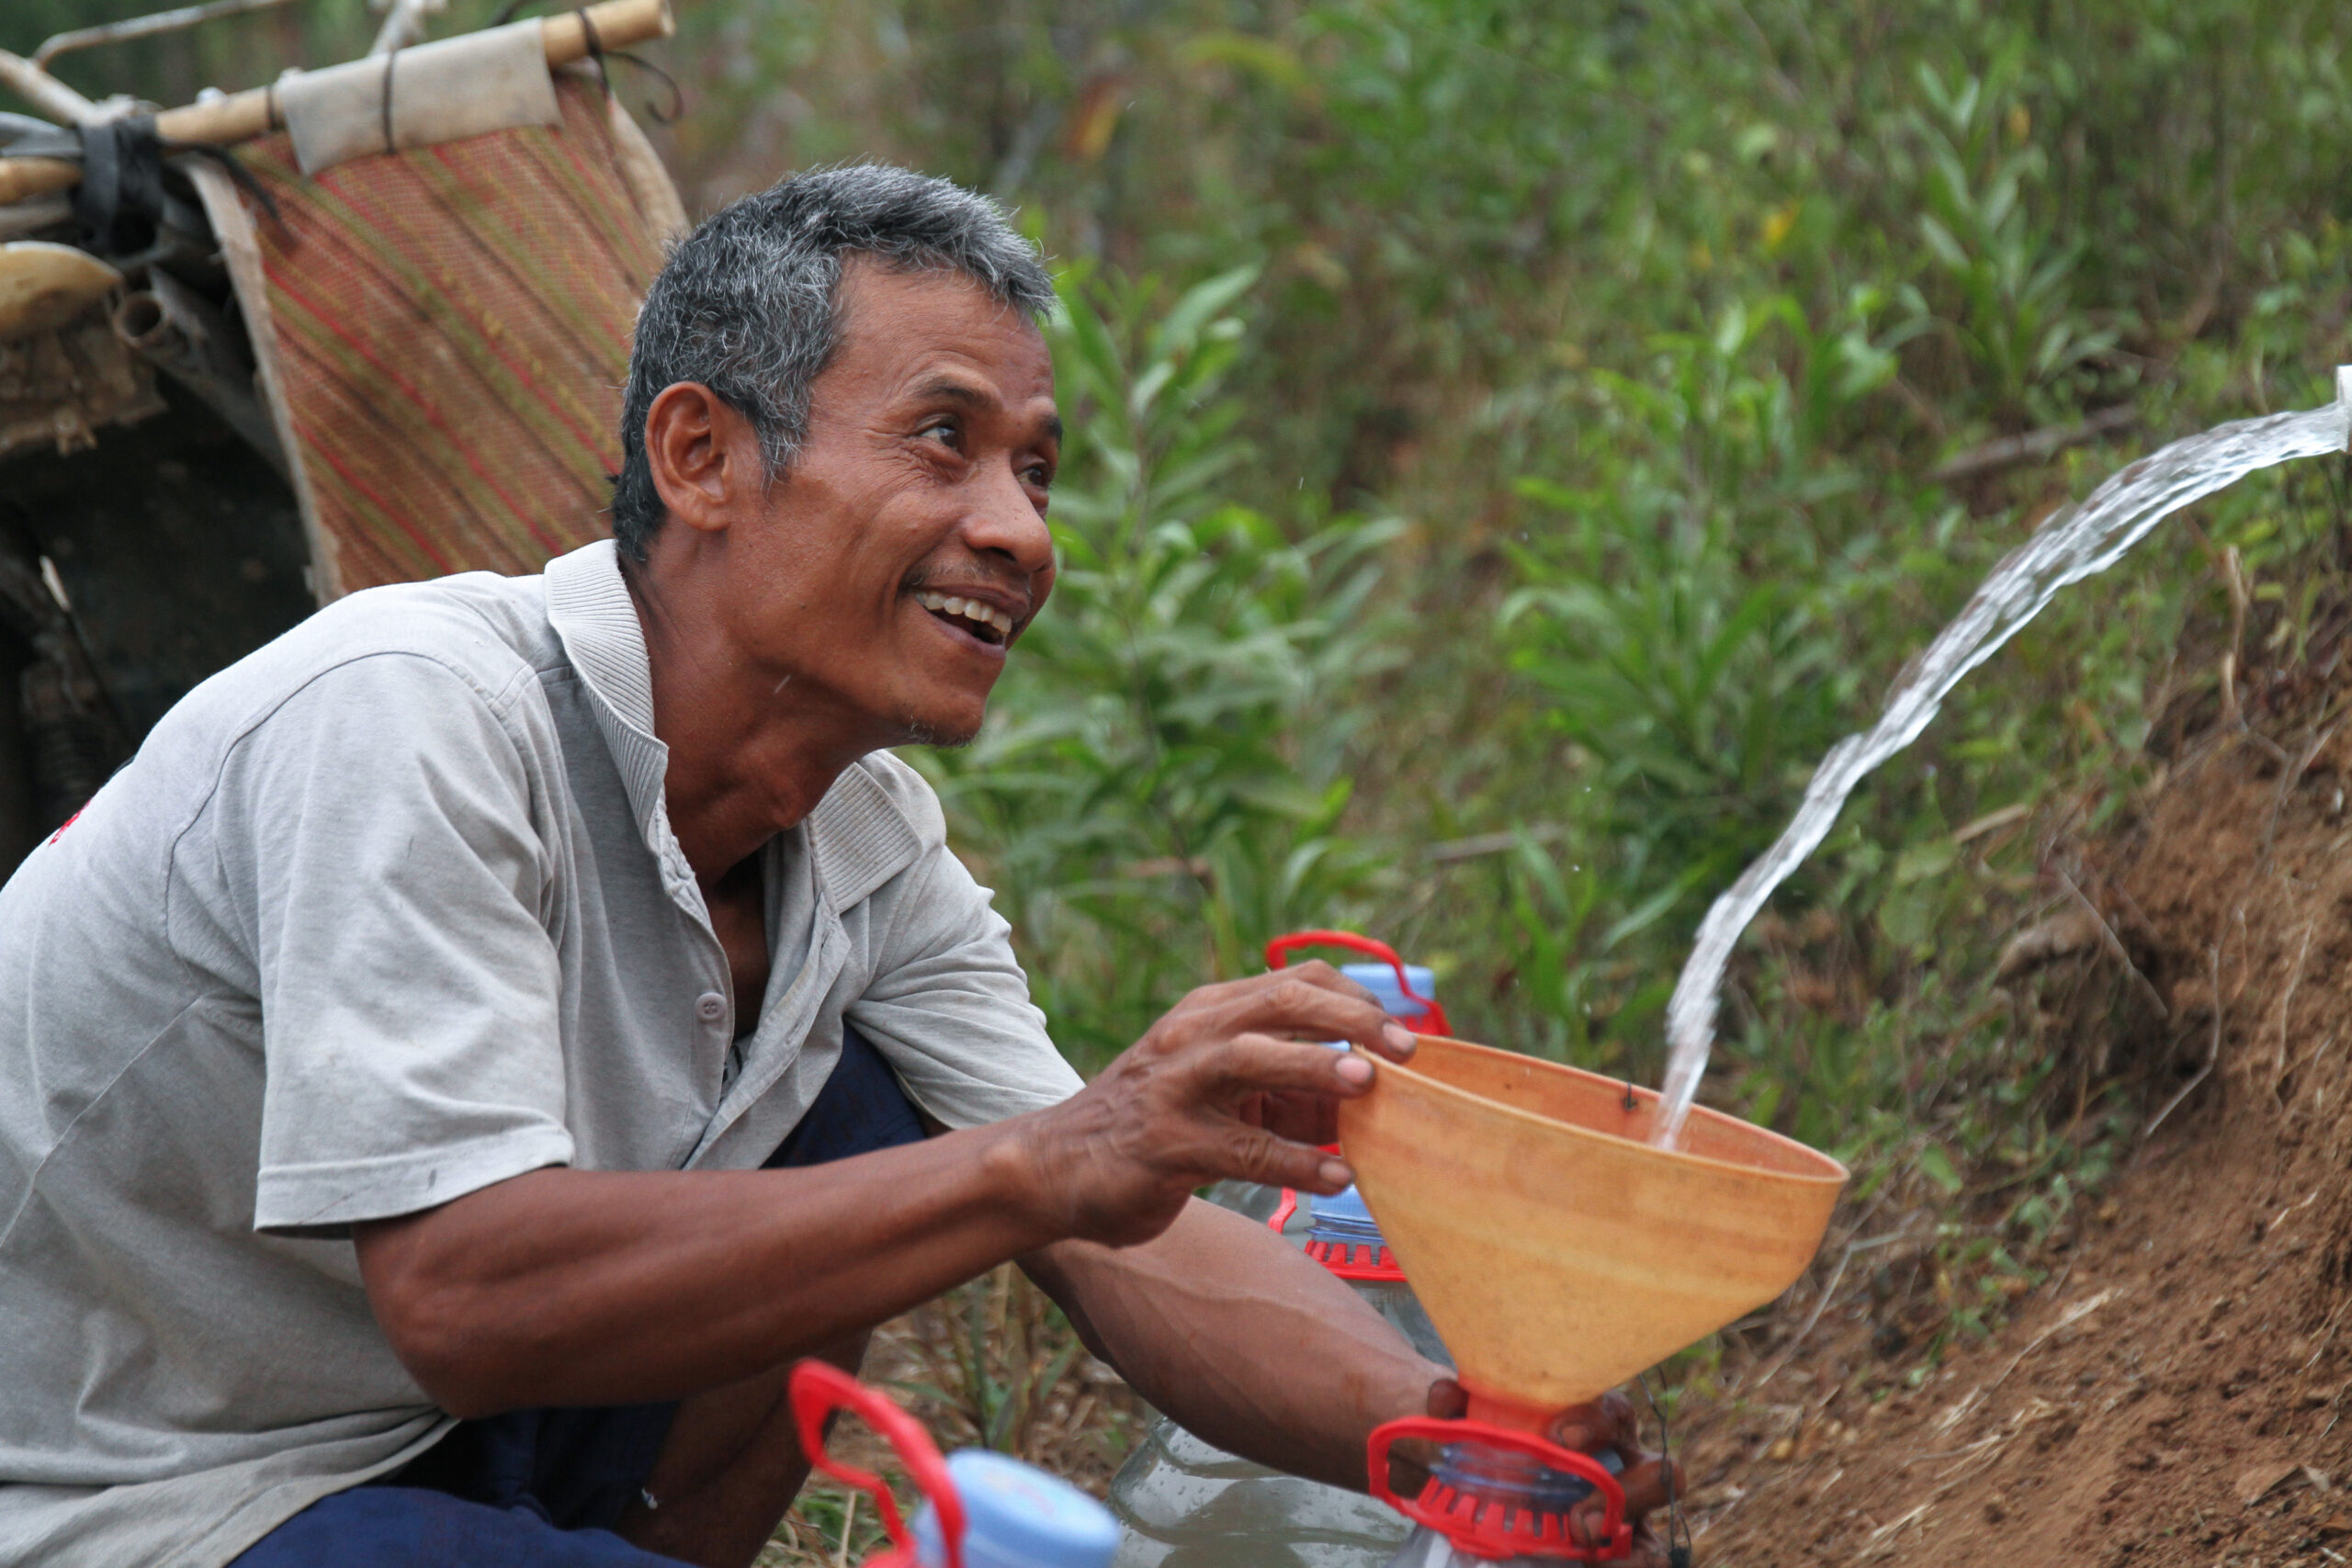 Warga Dusun Simargalih Kekeringan, Human Initiative Bantu Distribusi 1.200 Liter Air Bersih